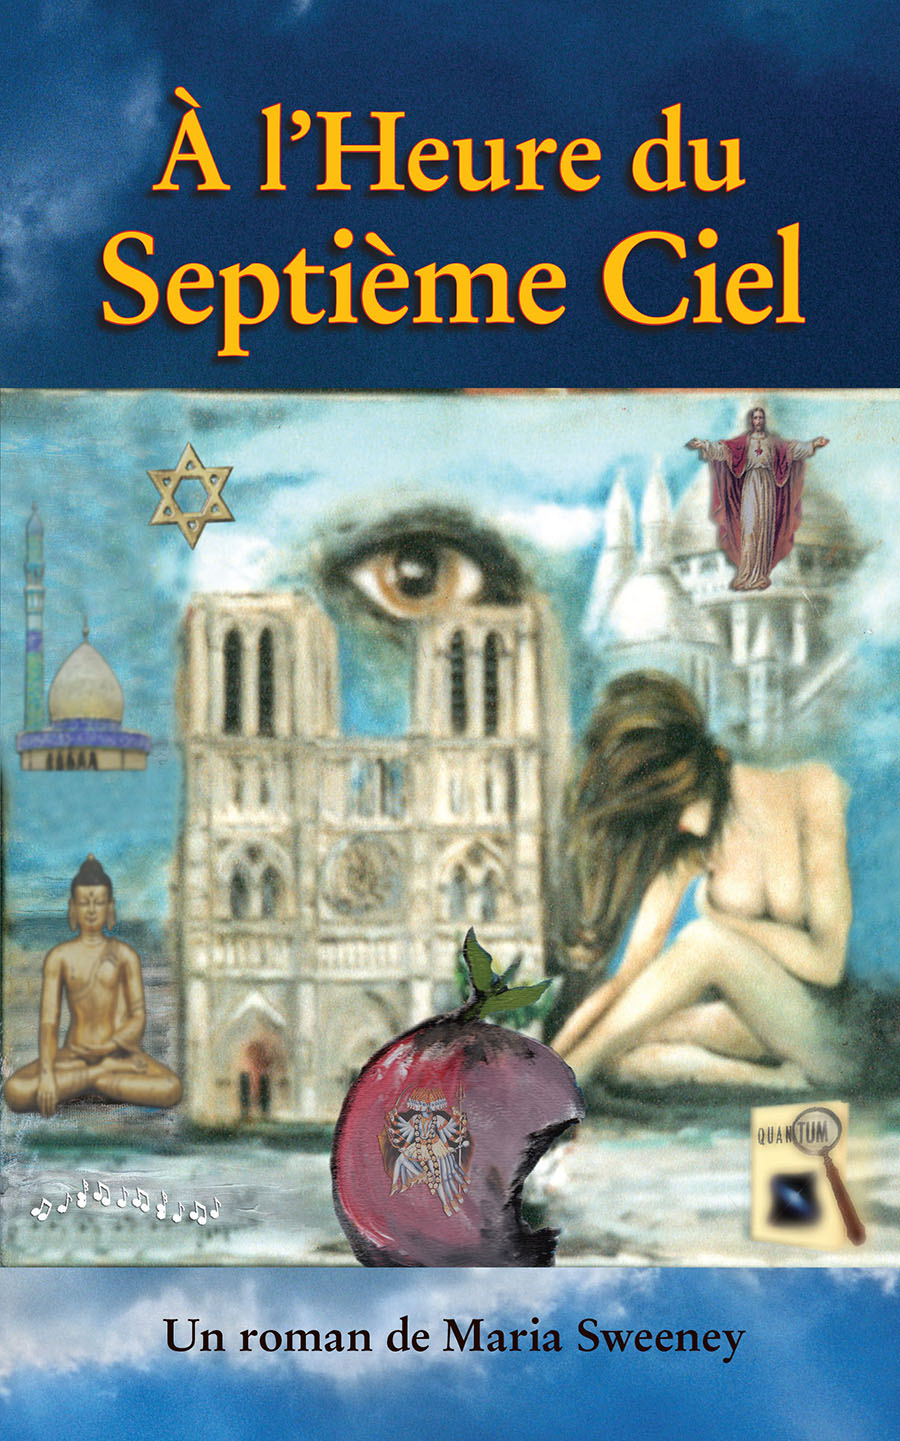 La couverture de À l’Heure du Septième Ciel.